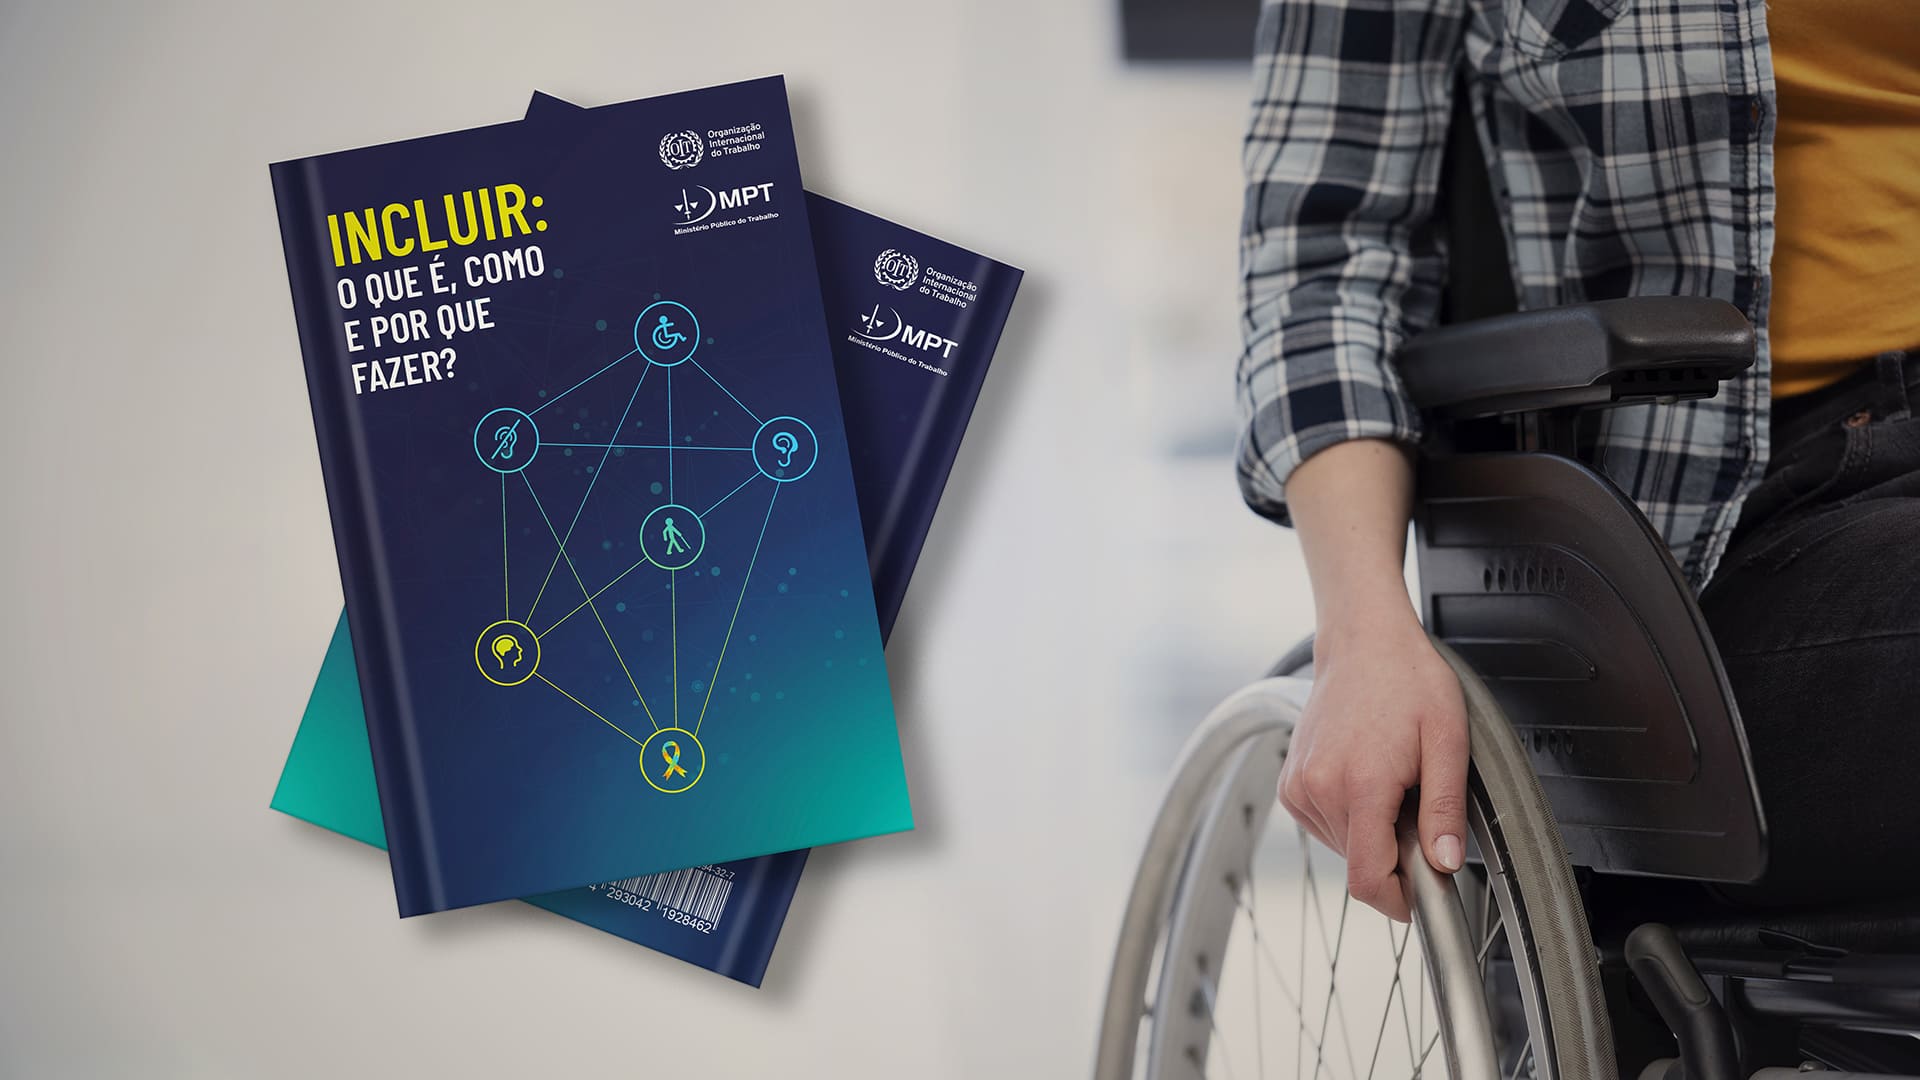 Foto com o guia sobre empregabilidade PcD, com o título “Incluir: O que é, como e por que fazer?” e pessoa em cadeira de rodas.